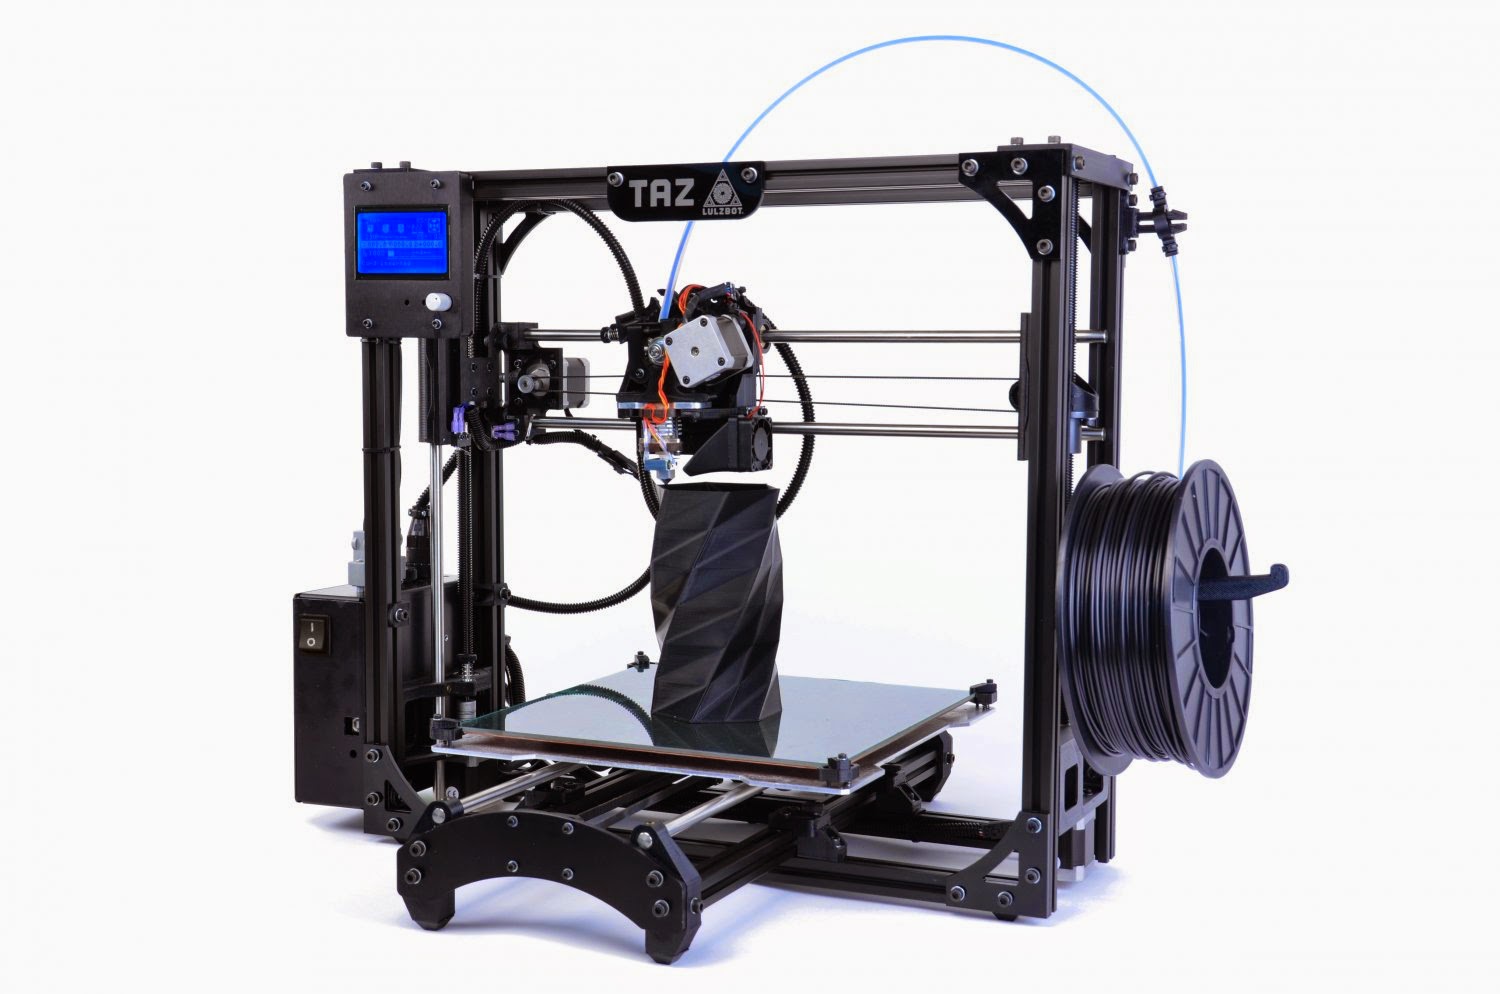 LulzBot-Taz-4-3D-Printer.jpg